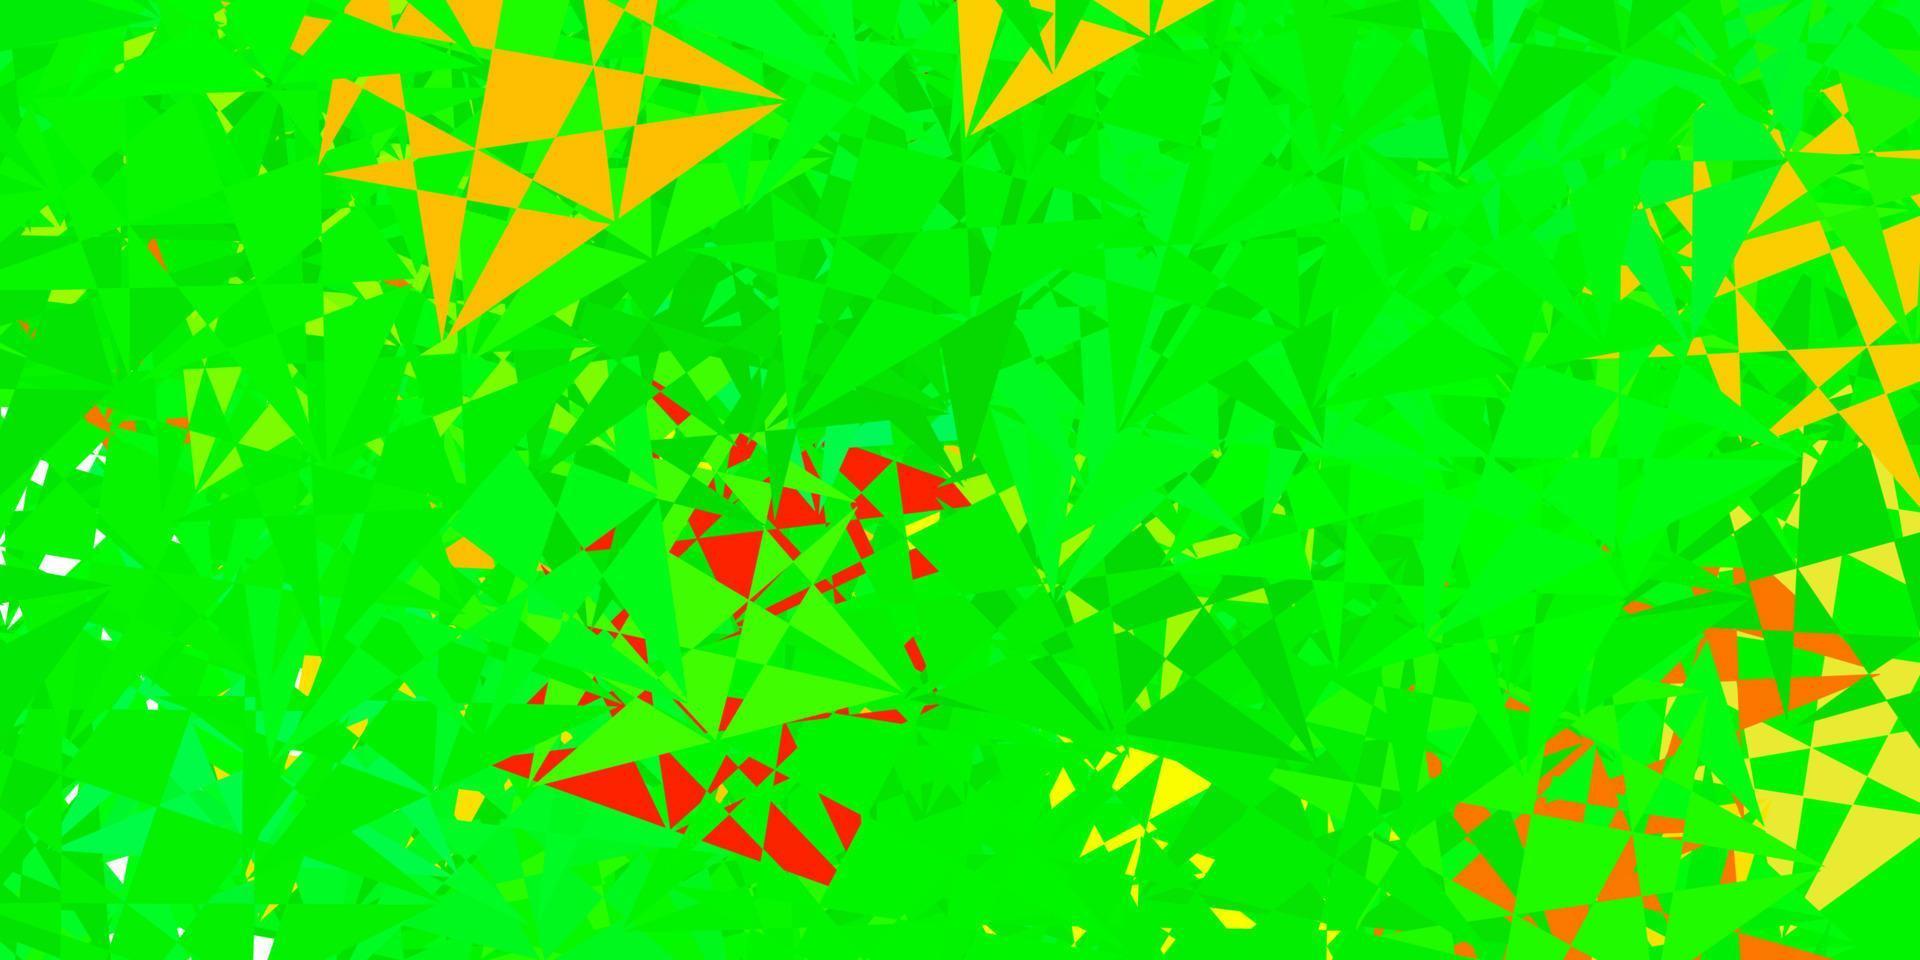 plantilla de vector verde oscuro, rojo con formas triangulares.